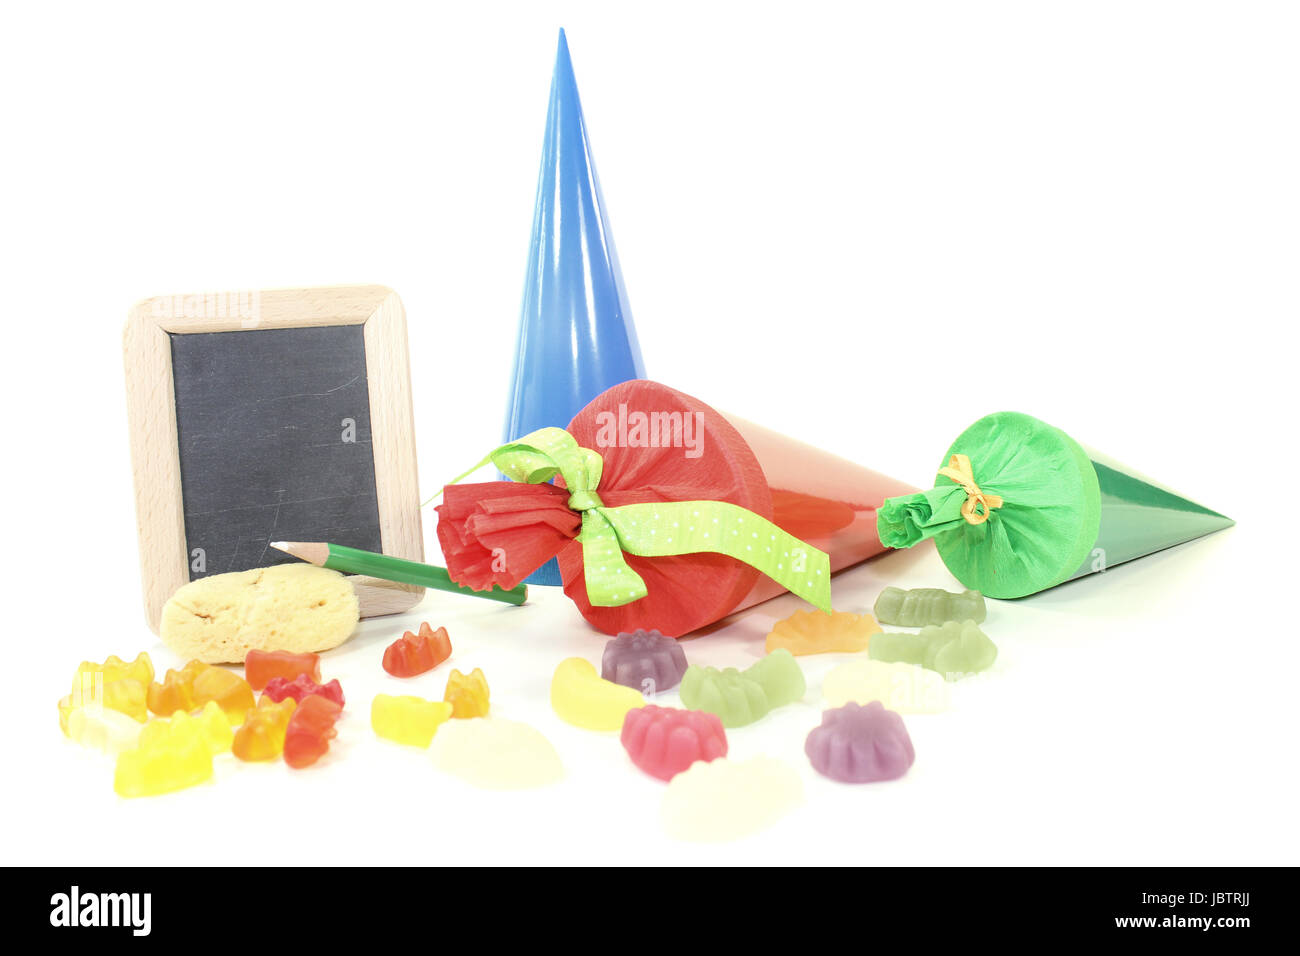 Schultüten mit Stift, Schwamm, Tafel und Süßigkeiten vor hellem Hintergrund Stock Photo